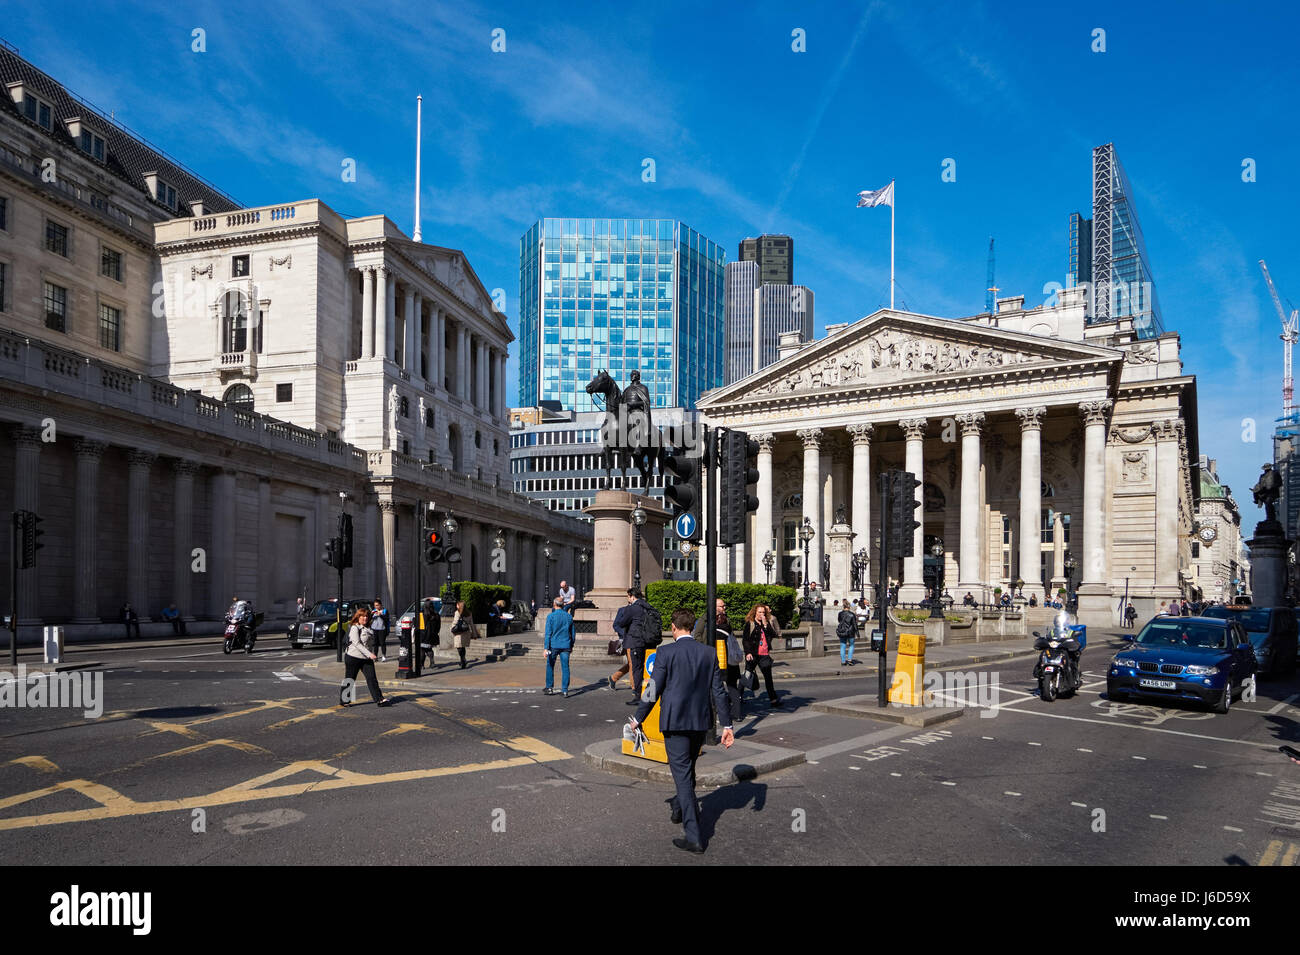 Bank Kreuzung mit der Bank von England und der Royal Exchange Gebäude in London, England Vereinigtes Königreich Großbritannien Stockfoto